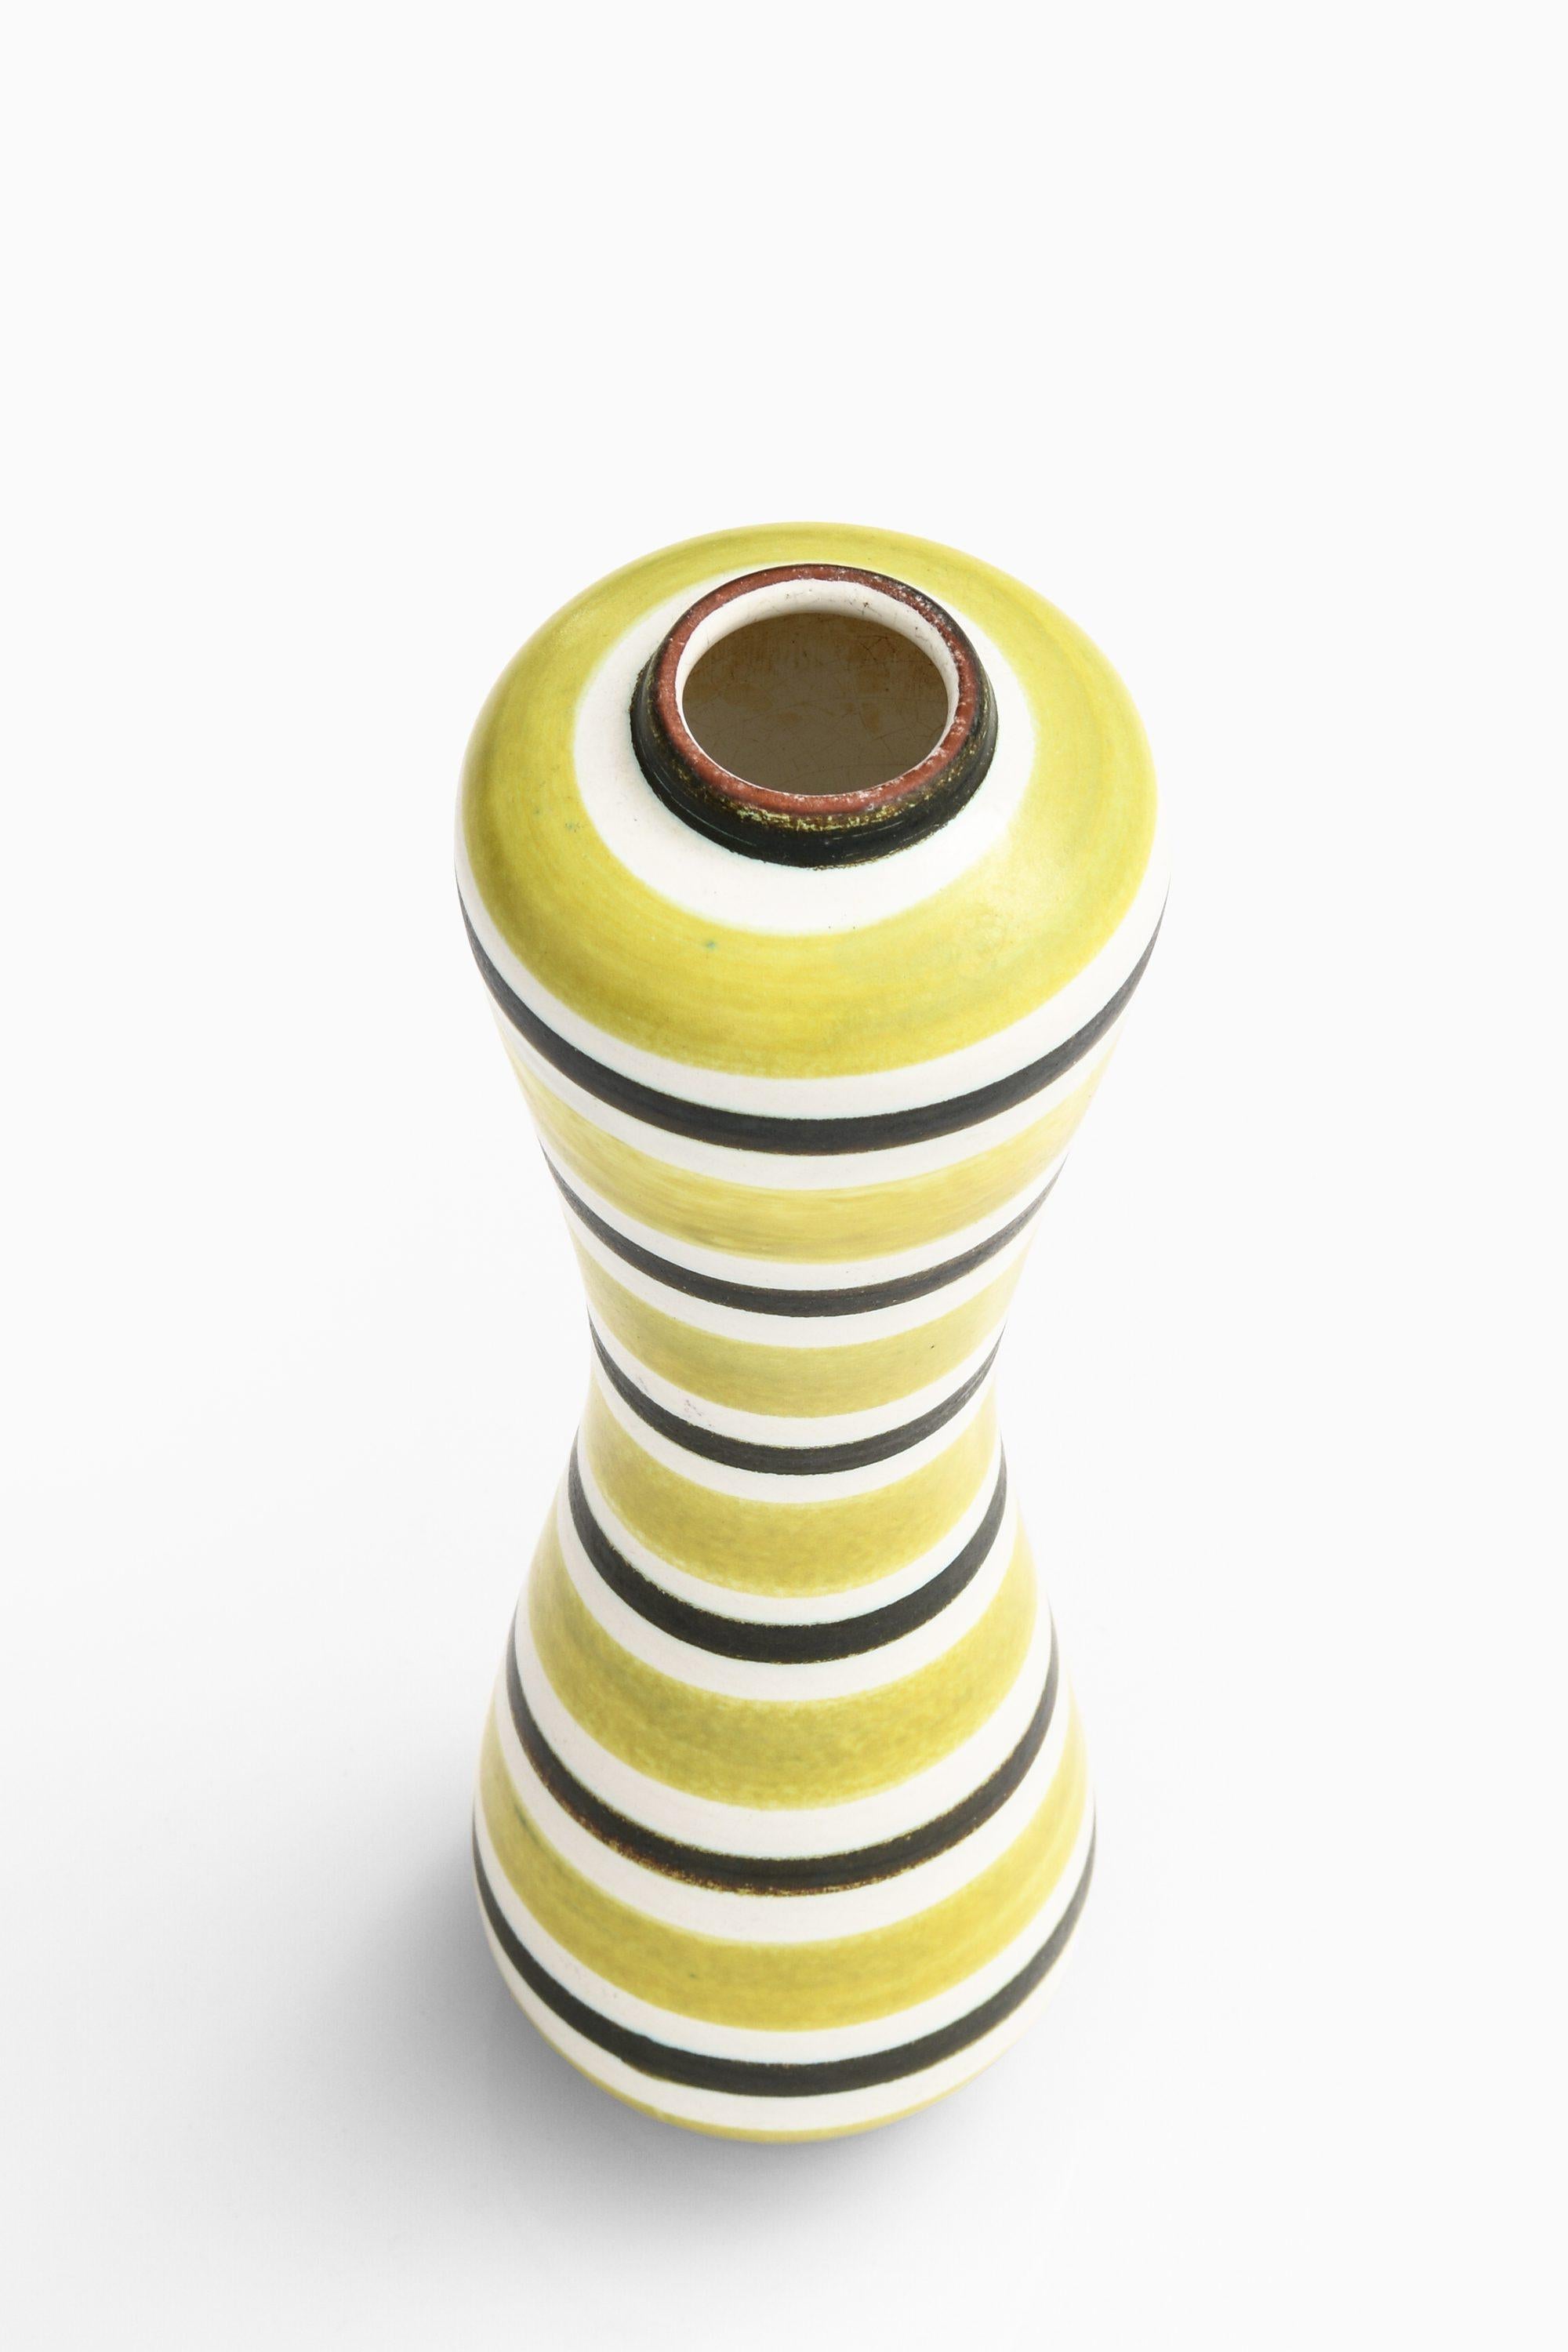 Seltene Keramikvase in Gelb von Stig Lindberg, 1950er Jahre (Skandinavische Moderne) im Angebot